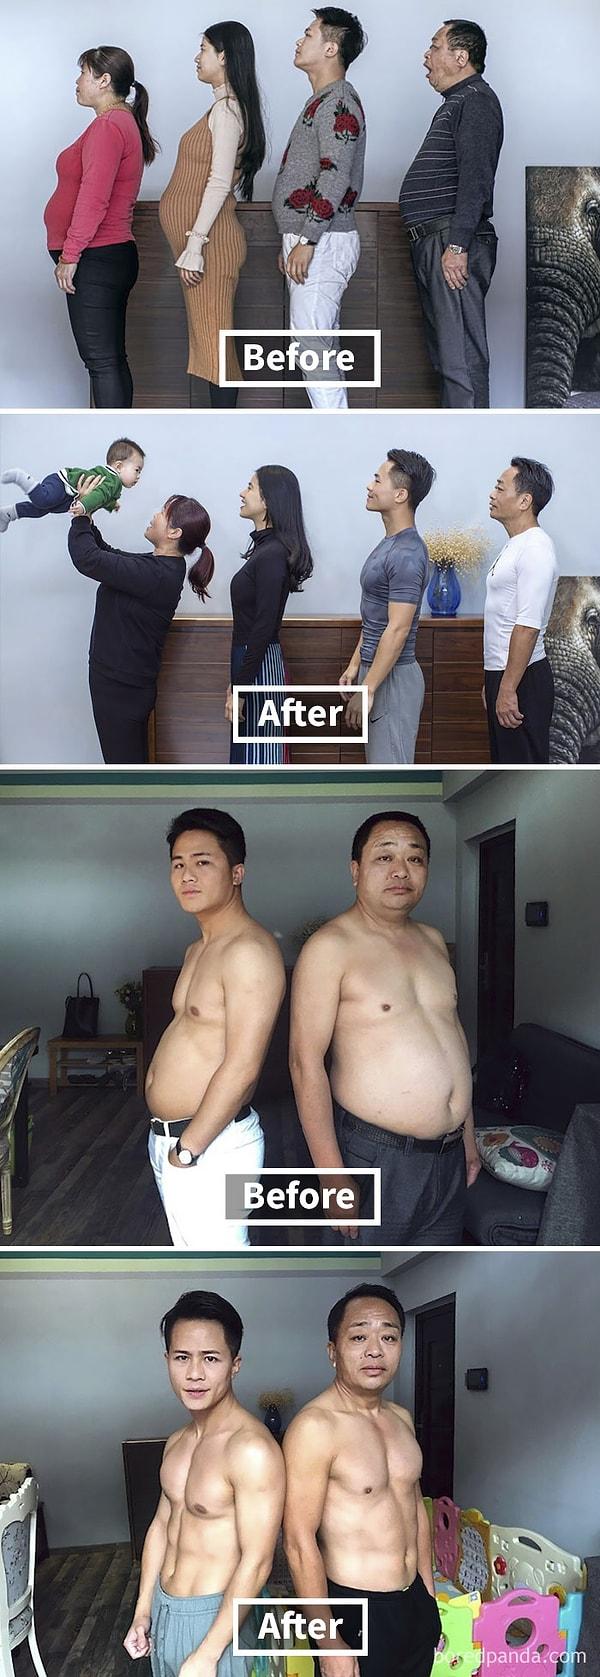 14. "6 ay boyunca egzersiz yapan Çinli ailenin önce ve sonra fotoğrafları:"